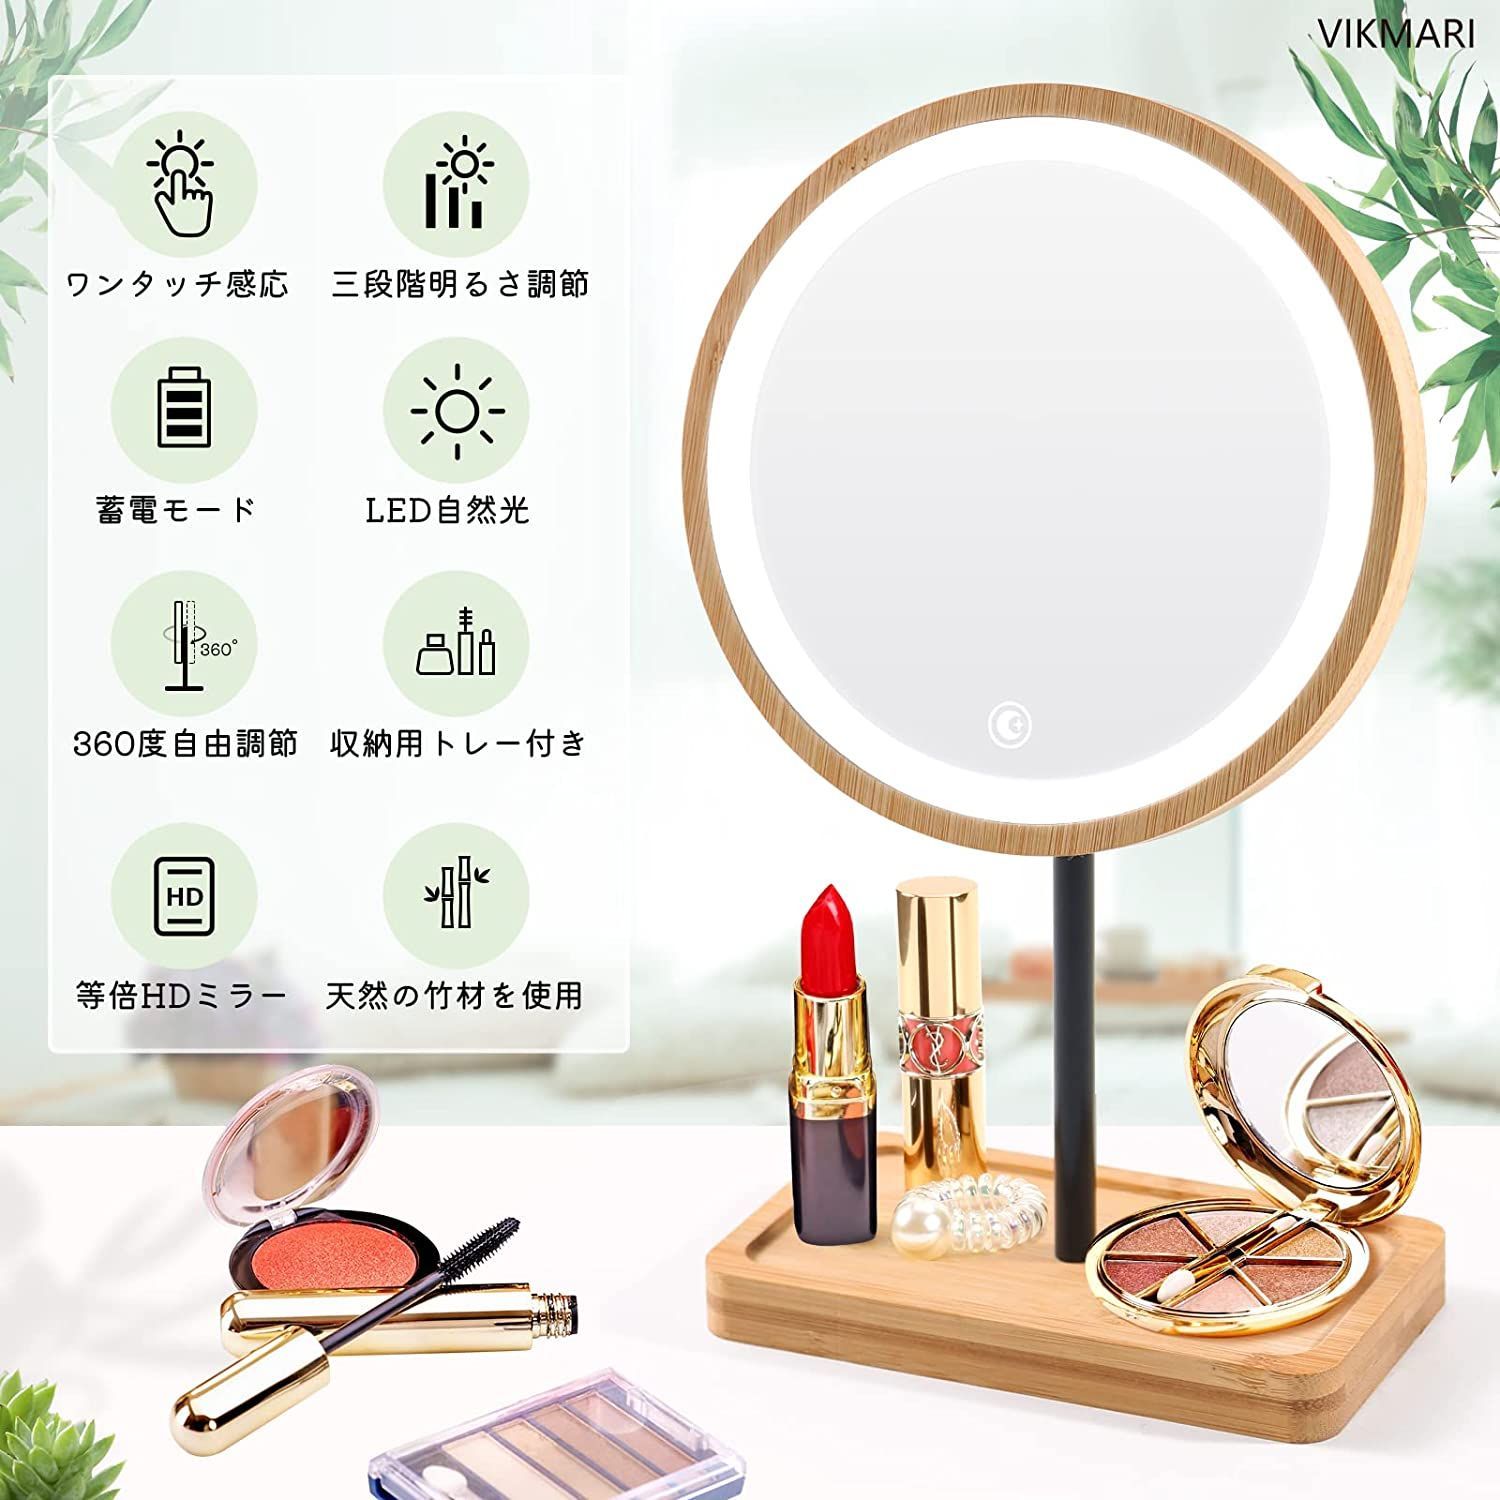 鏡 卓上化粧鏡 卓上ミラー 化粧 かがみ 化粧ミラー かがみ 360度回転できる天然木製ベースの化粧鏡 ミラー 卓上 鏡 